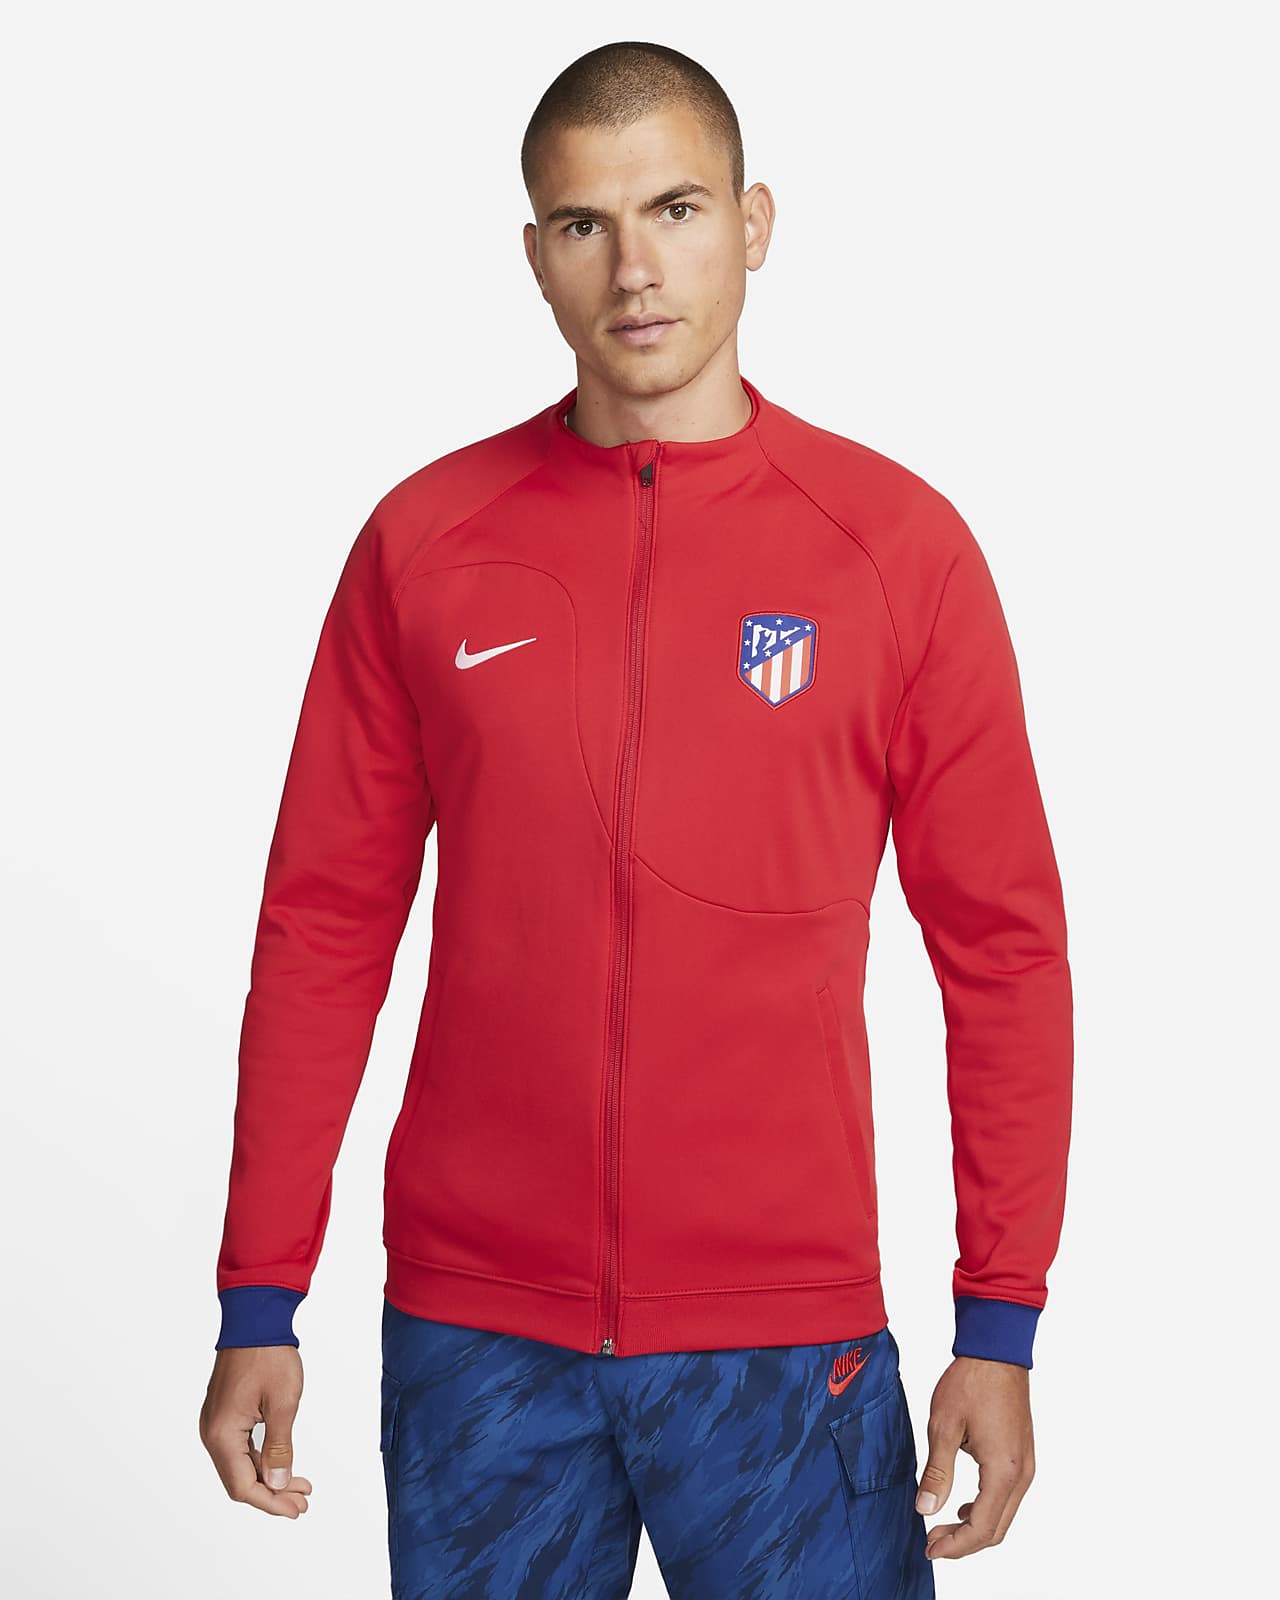 Atlético Madrid Pro Men's Full-Zip Knit Football Jacket.